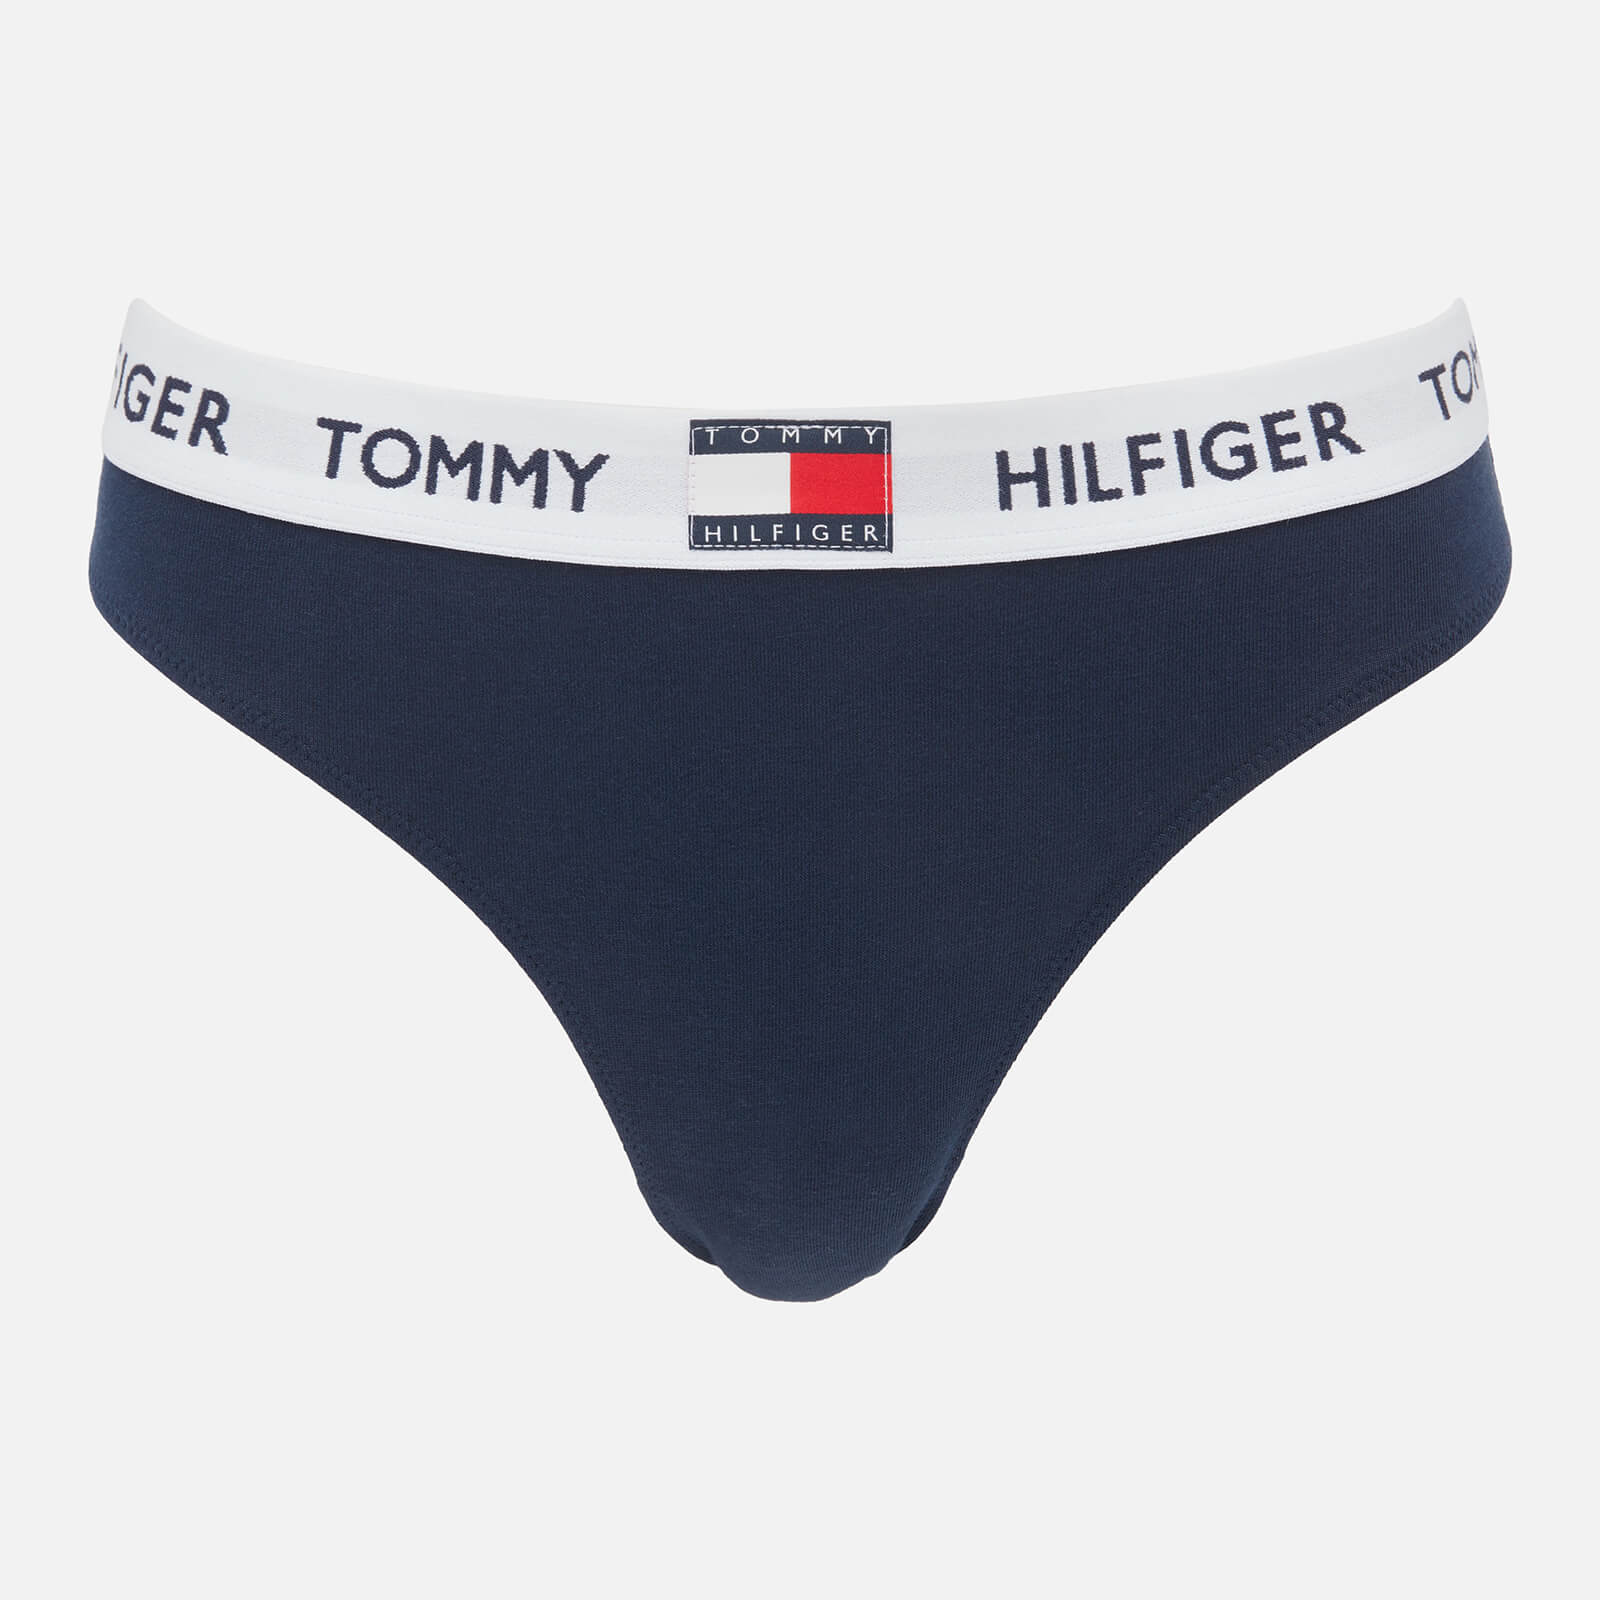 Tommy Hilfiger Women's Original Cotton Bikini Briefs - Navy Blazer - XS